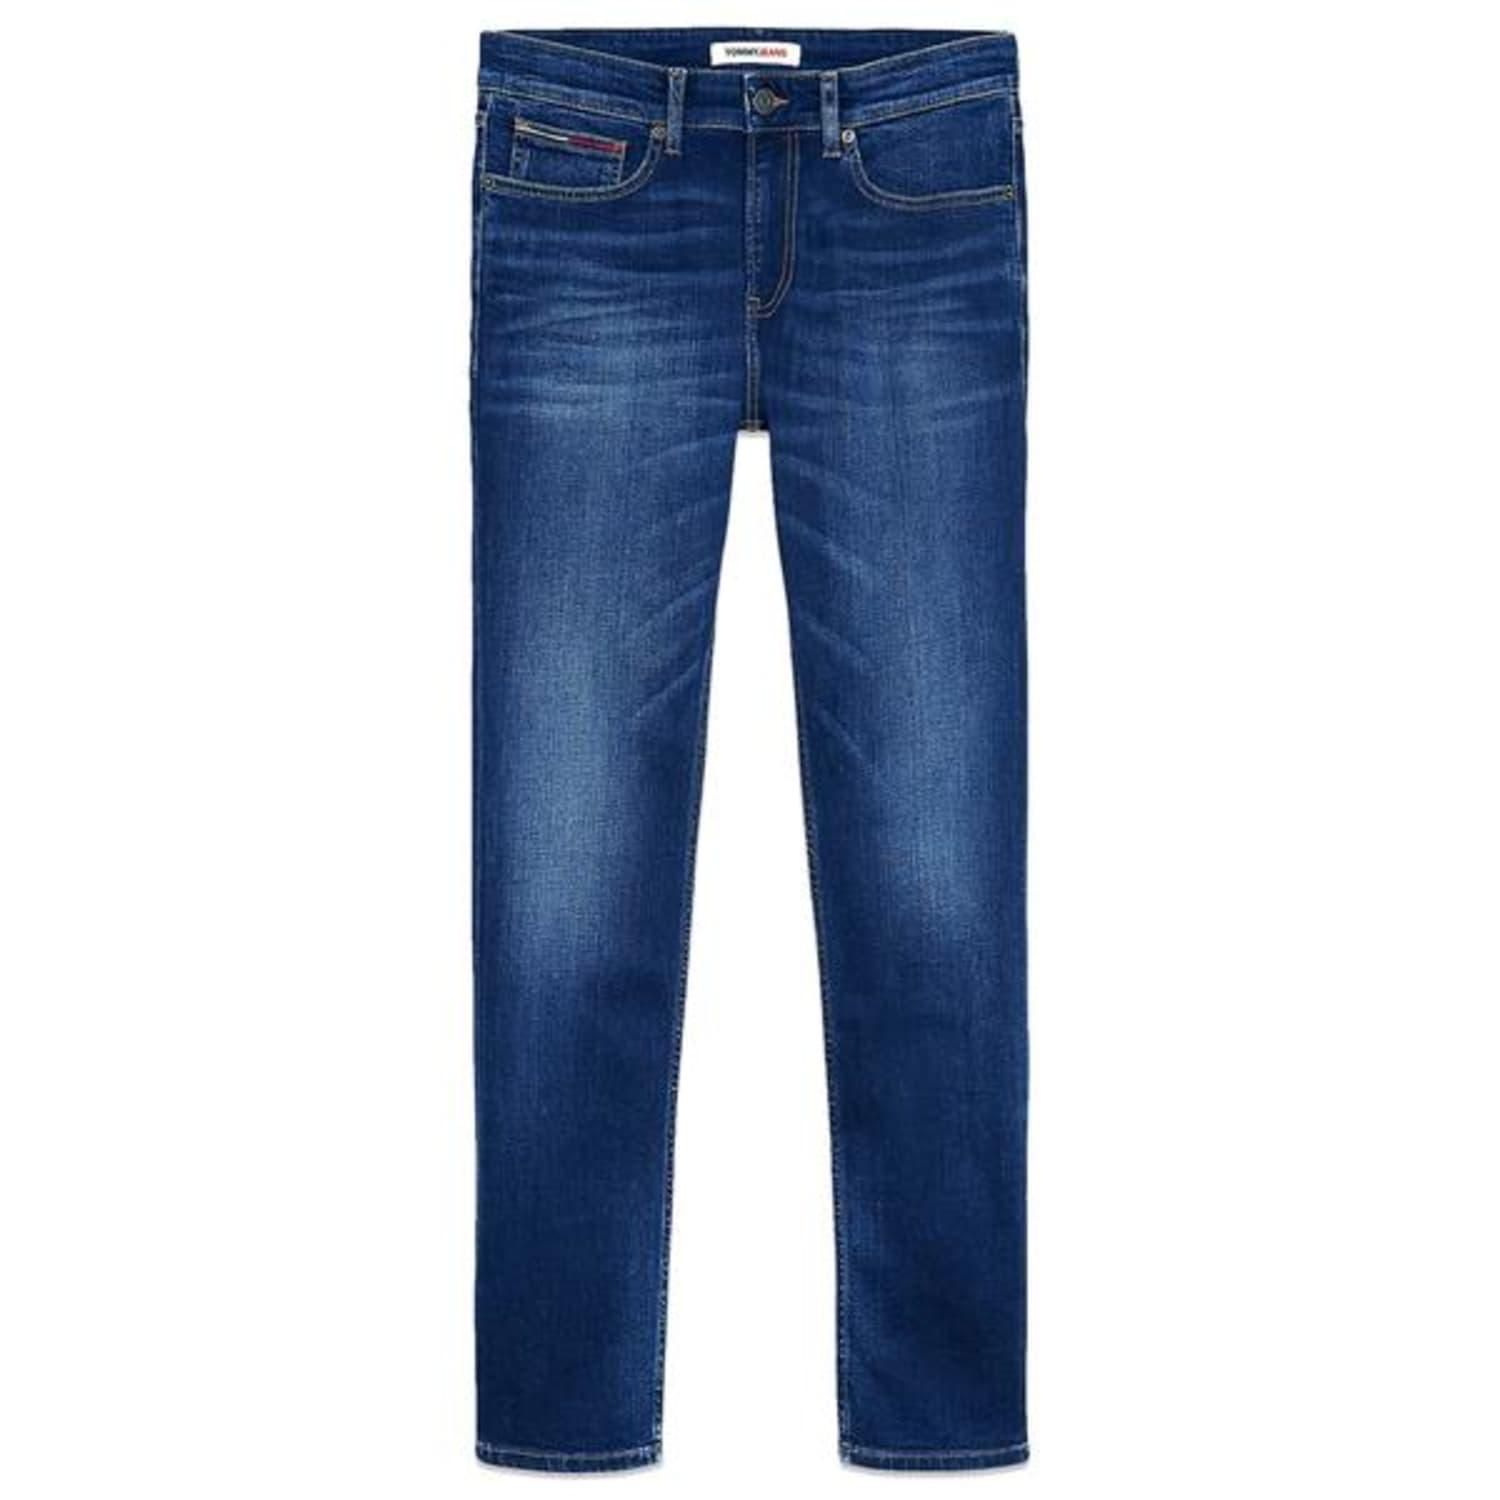 Tommy Hilfiger Scanton Slim Jeans Aspen Dark Blue Stretch for Men | Lyst | Stretchjeans